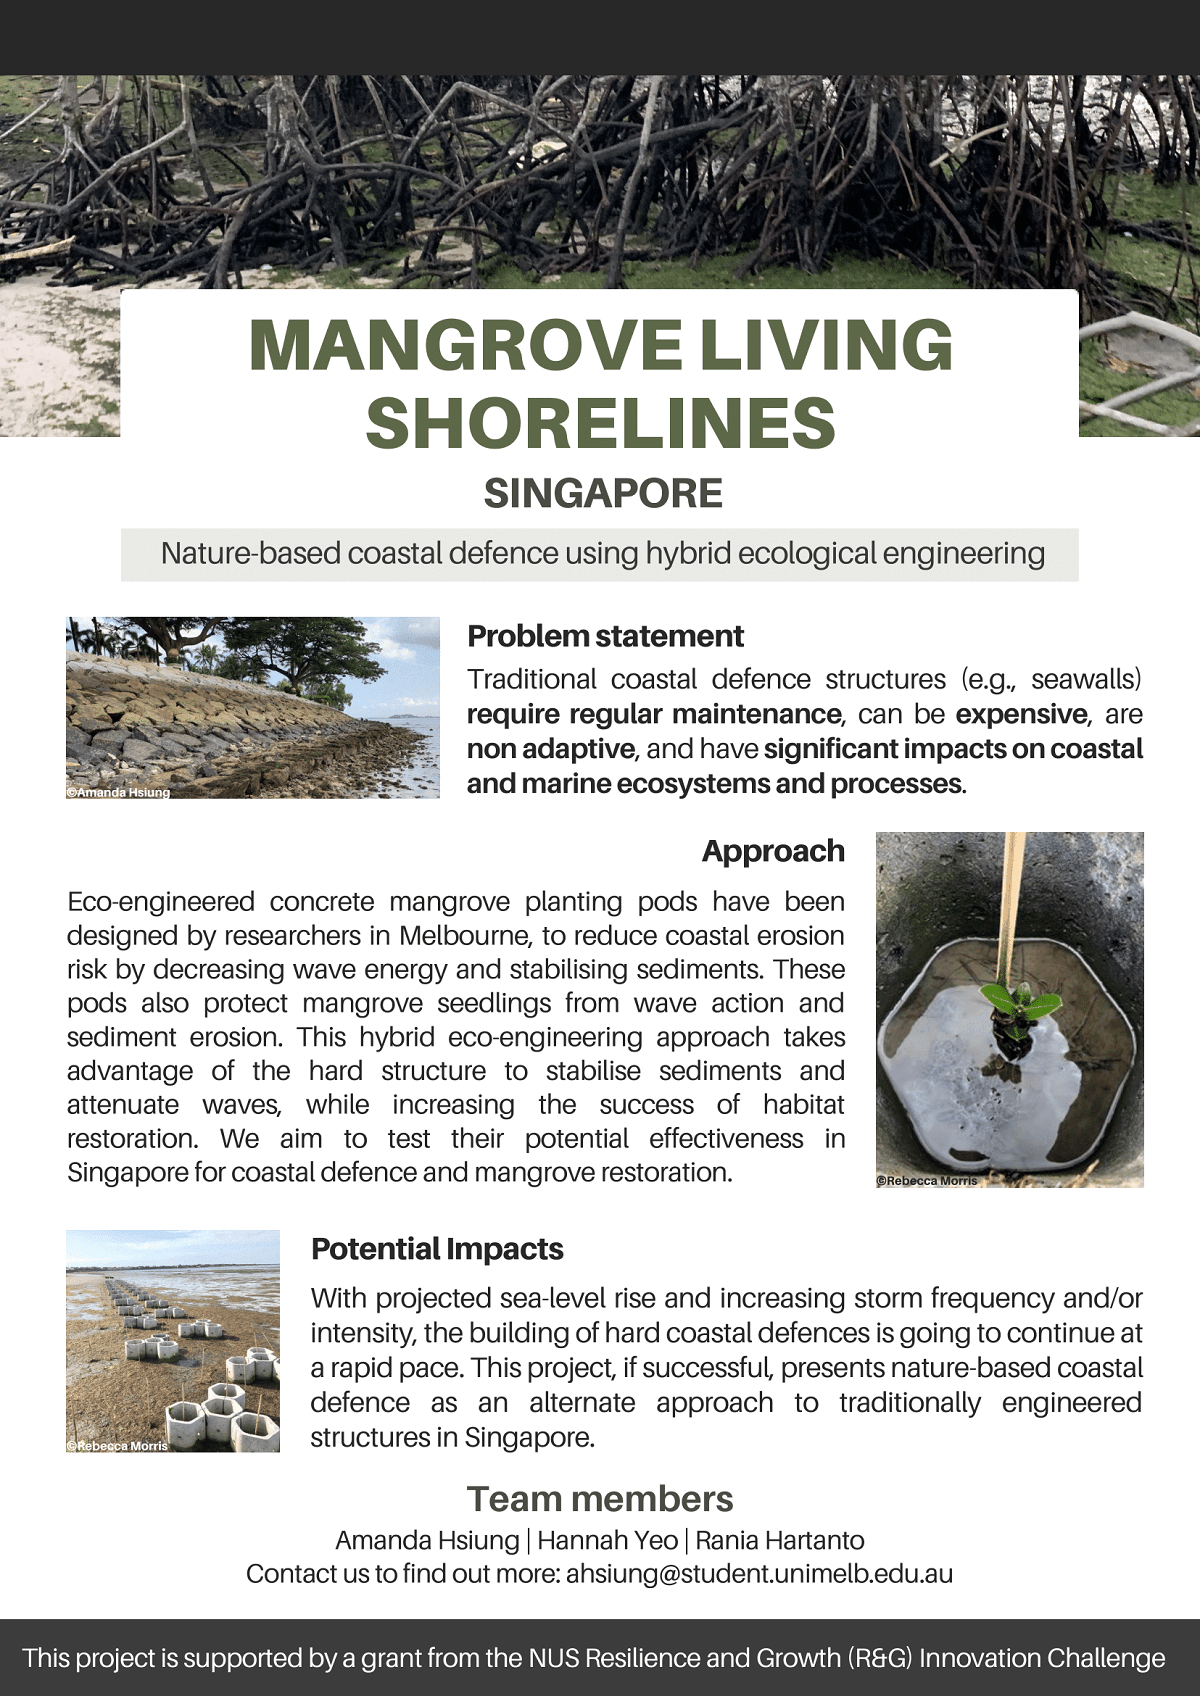 RG105 - Mangrove living shorelines